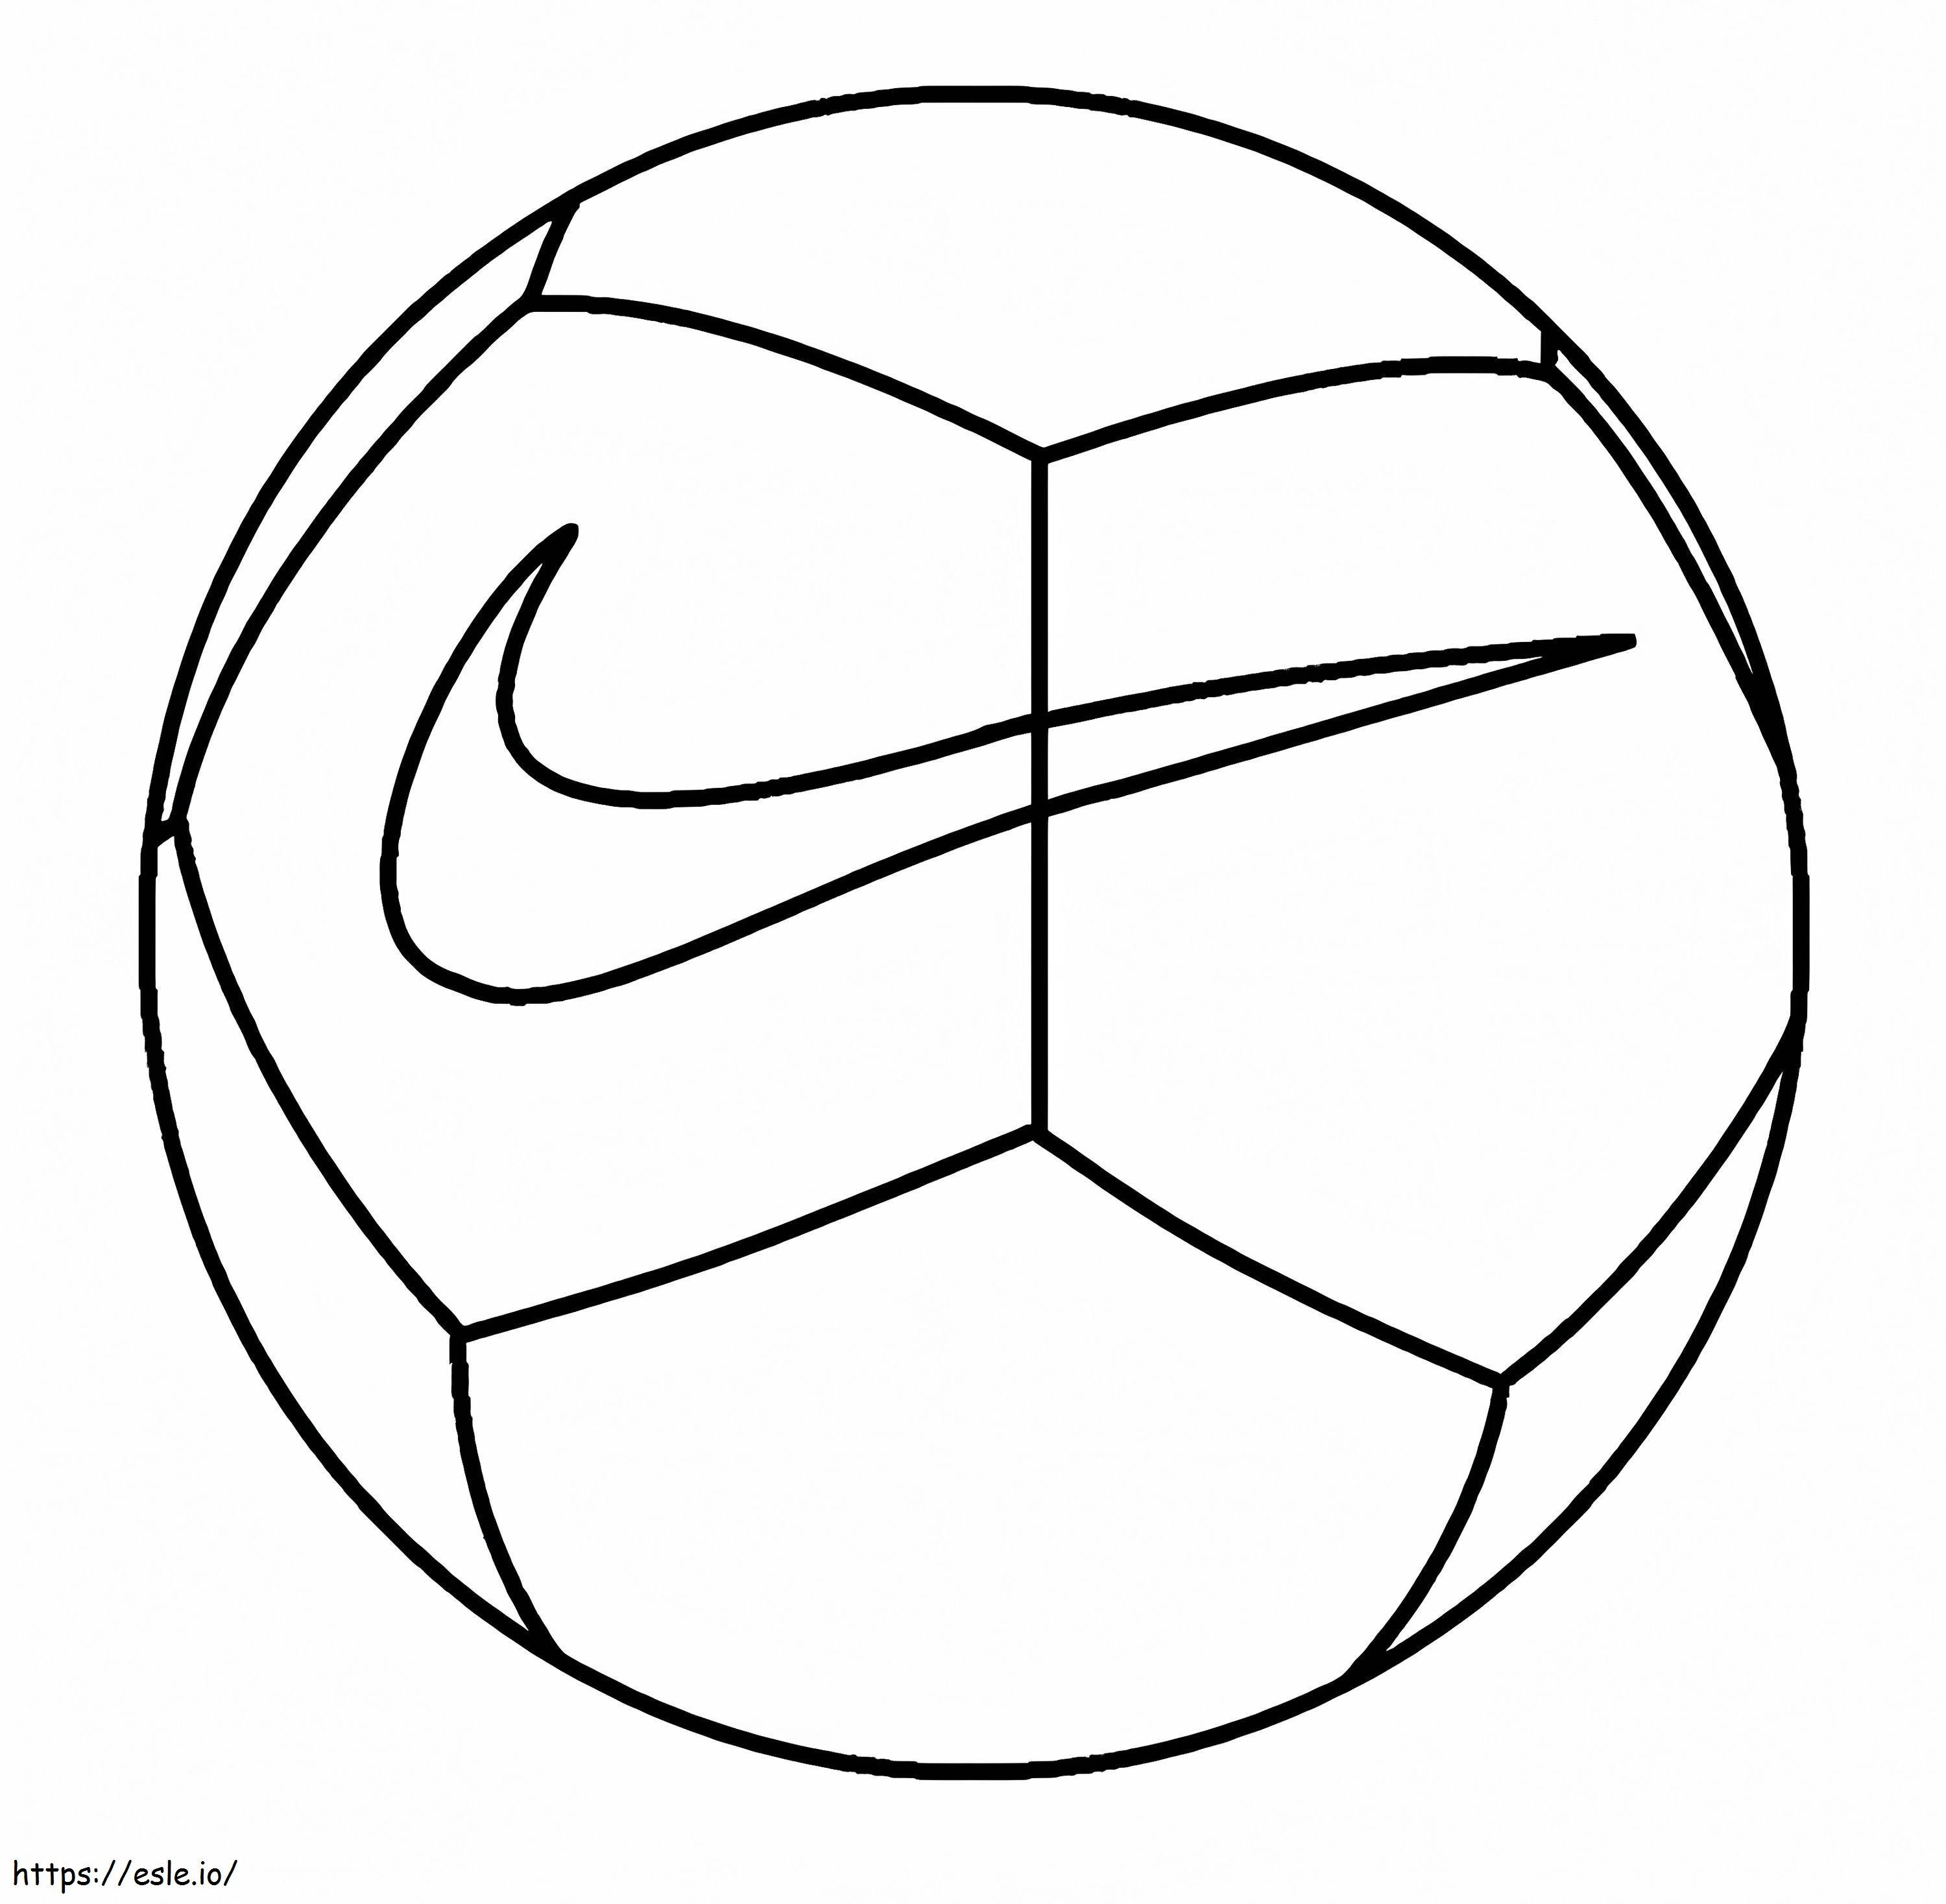 Coloriage à imprimer : un ballon de foot